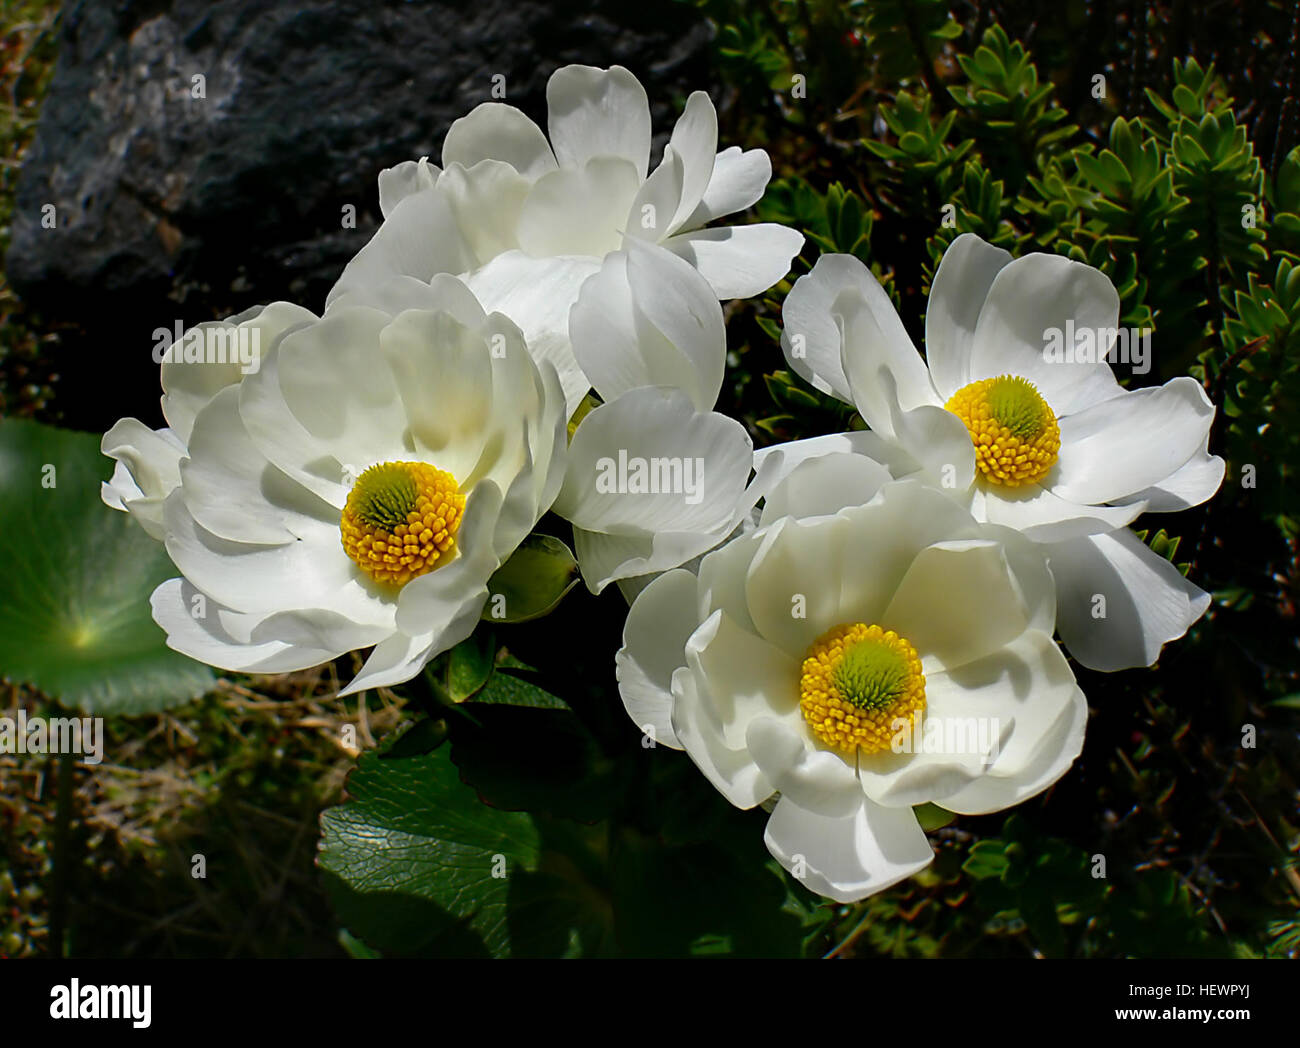 Mount Cook Lily (Ranunculus Lyallii) ist einer der bekanntesten alpinen Pflanzen Neuseelands. Seine Blüte Bild wurde auf Postkarten, Briefmarken und sogar als Logo auf der Seite der Flugzeuge verwendet. Nirgends ist es schöner wenn als wenn gesehen wachsen in großer Zahl auf einem Berg Hügel mit seinen schönen weißen Blüten und große glänzende Blätter. Stockfoto